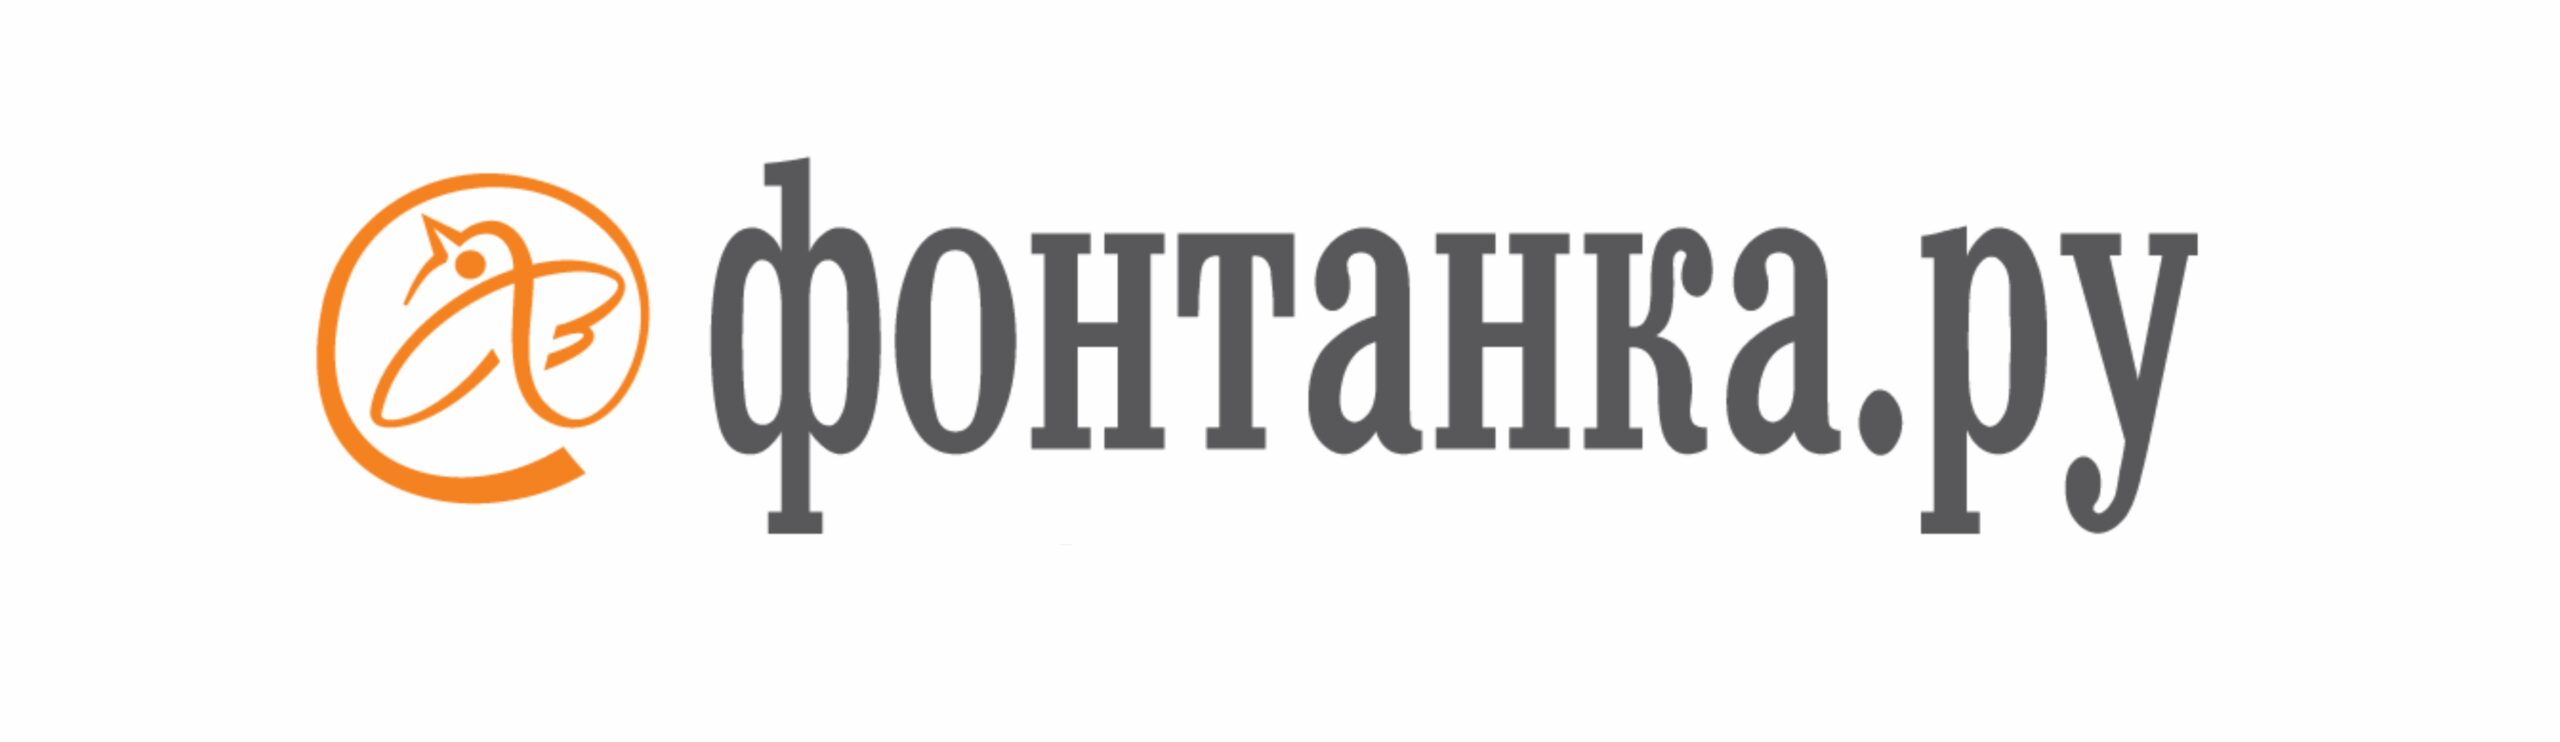 Сайт фонтанка ру. Фонтанка ру. Фонтанка логотип. Фонтанка СМИ. Фонтанка ру логотип на прозрачном фоне.